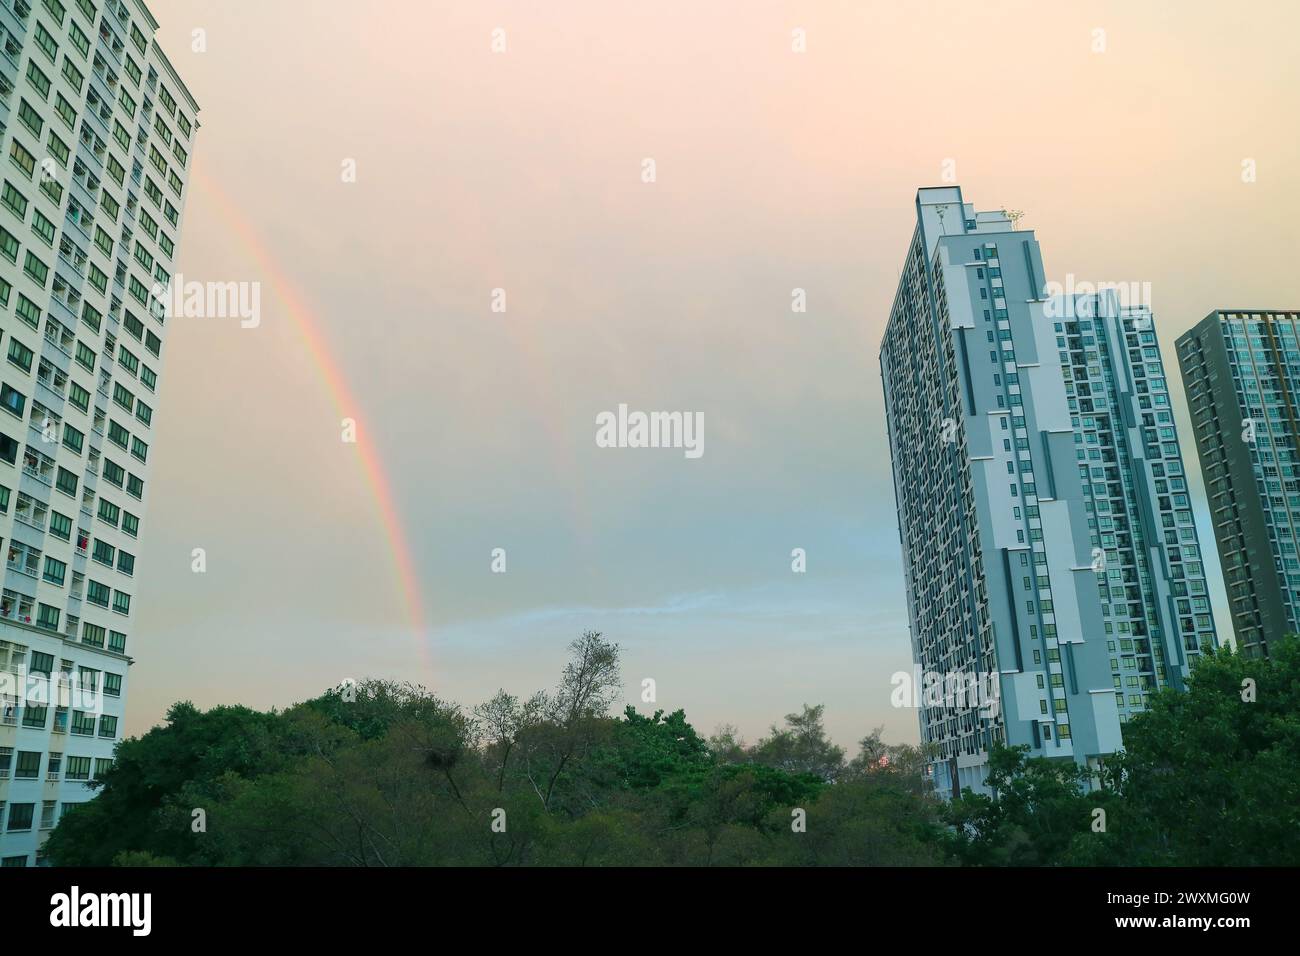 Wunderschöner Regenbogen über dem abendlichen städtischen Himmel Stockfoto